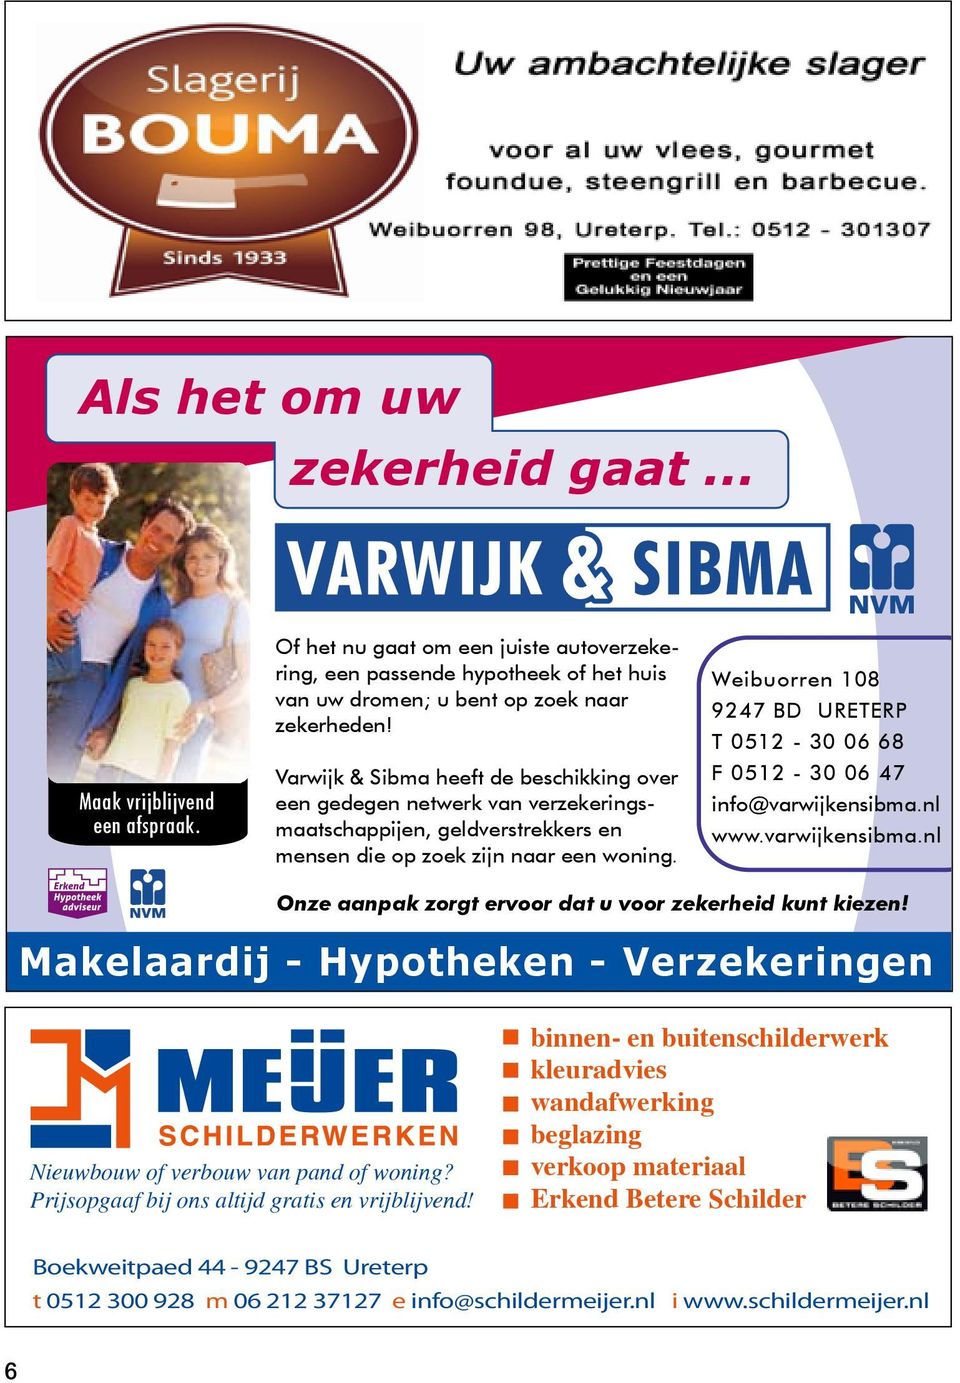 Weibuorren 108 9247 BD URETERP T 0512-30 06 68 F 0512-30 06 47 info@varwijkensibma.nl www.varwijkensibma.nl Onze aanpak zorgt ervoor dat u voor zekerheid kunt kiezen!